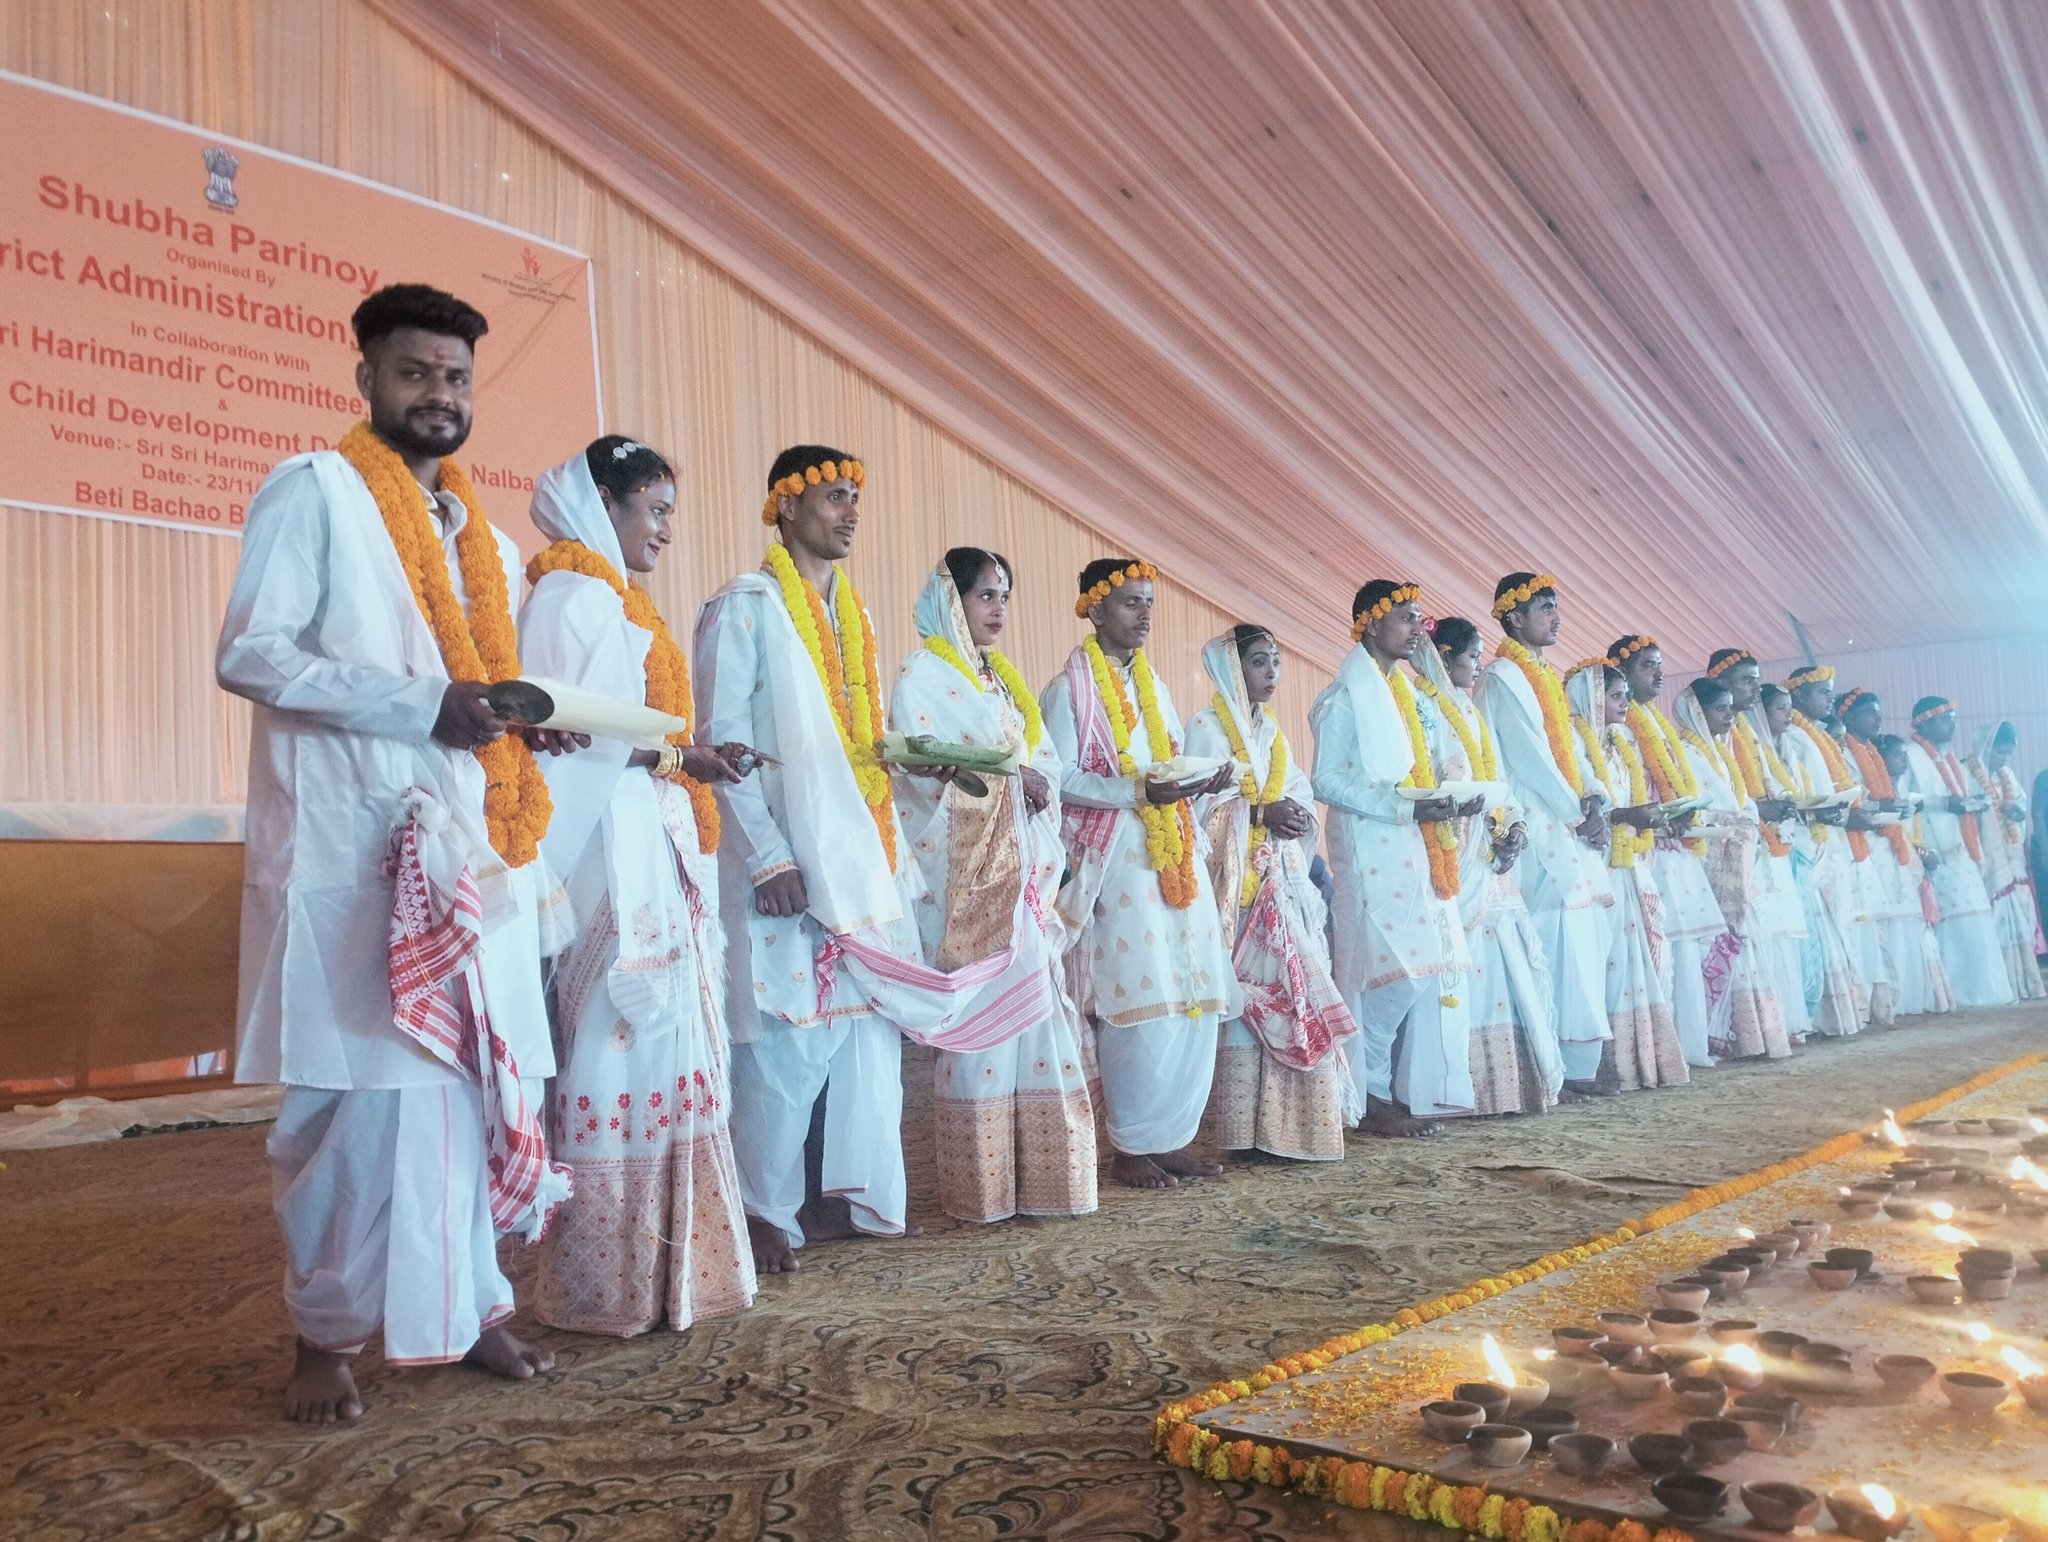 10 Couples tie the knot in Nalbari's 'Shubh Parinay' event under 'Beti Bachao Beti Padhao'